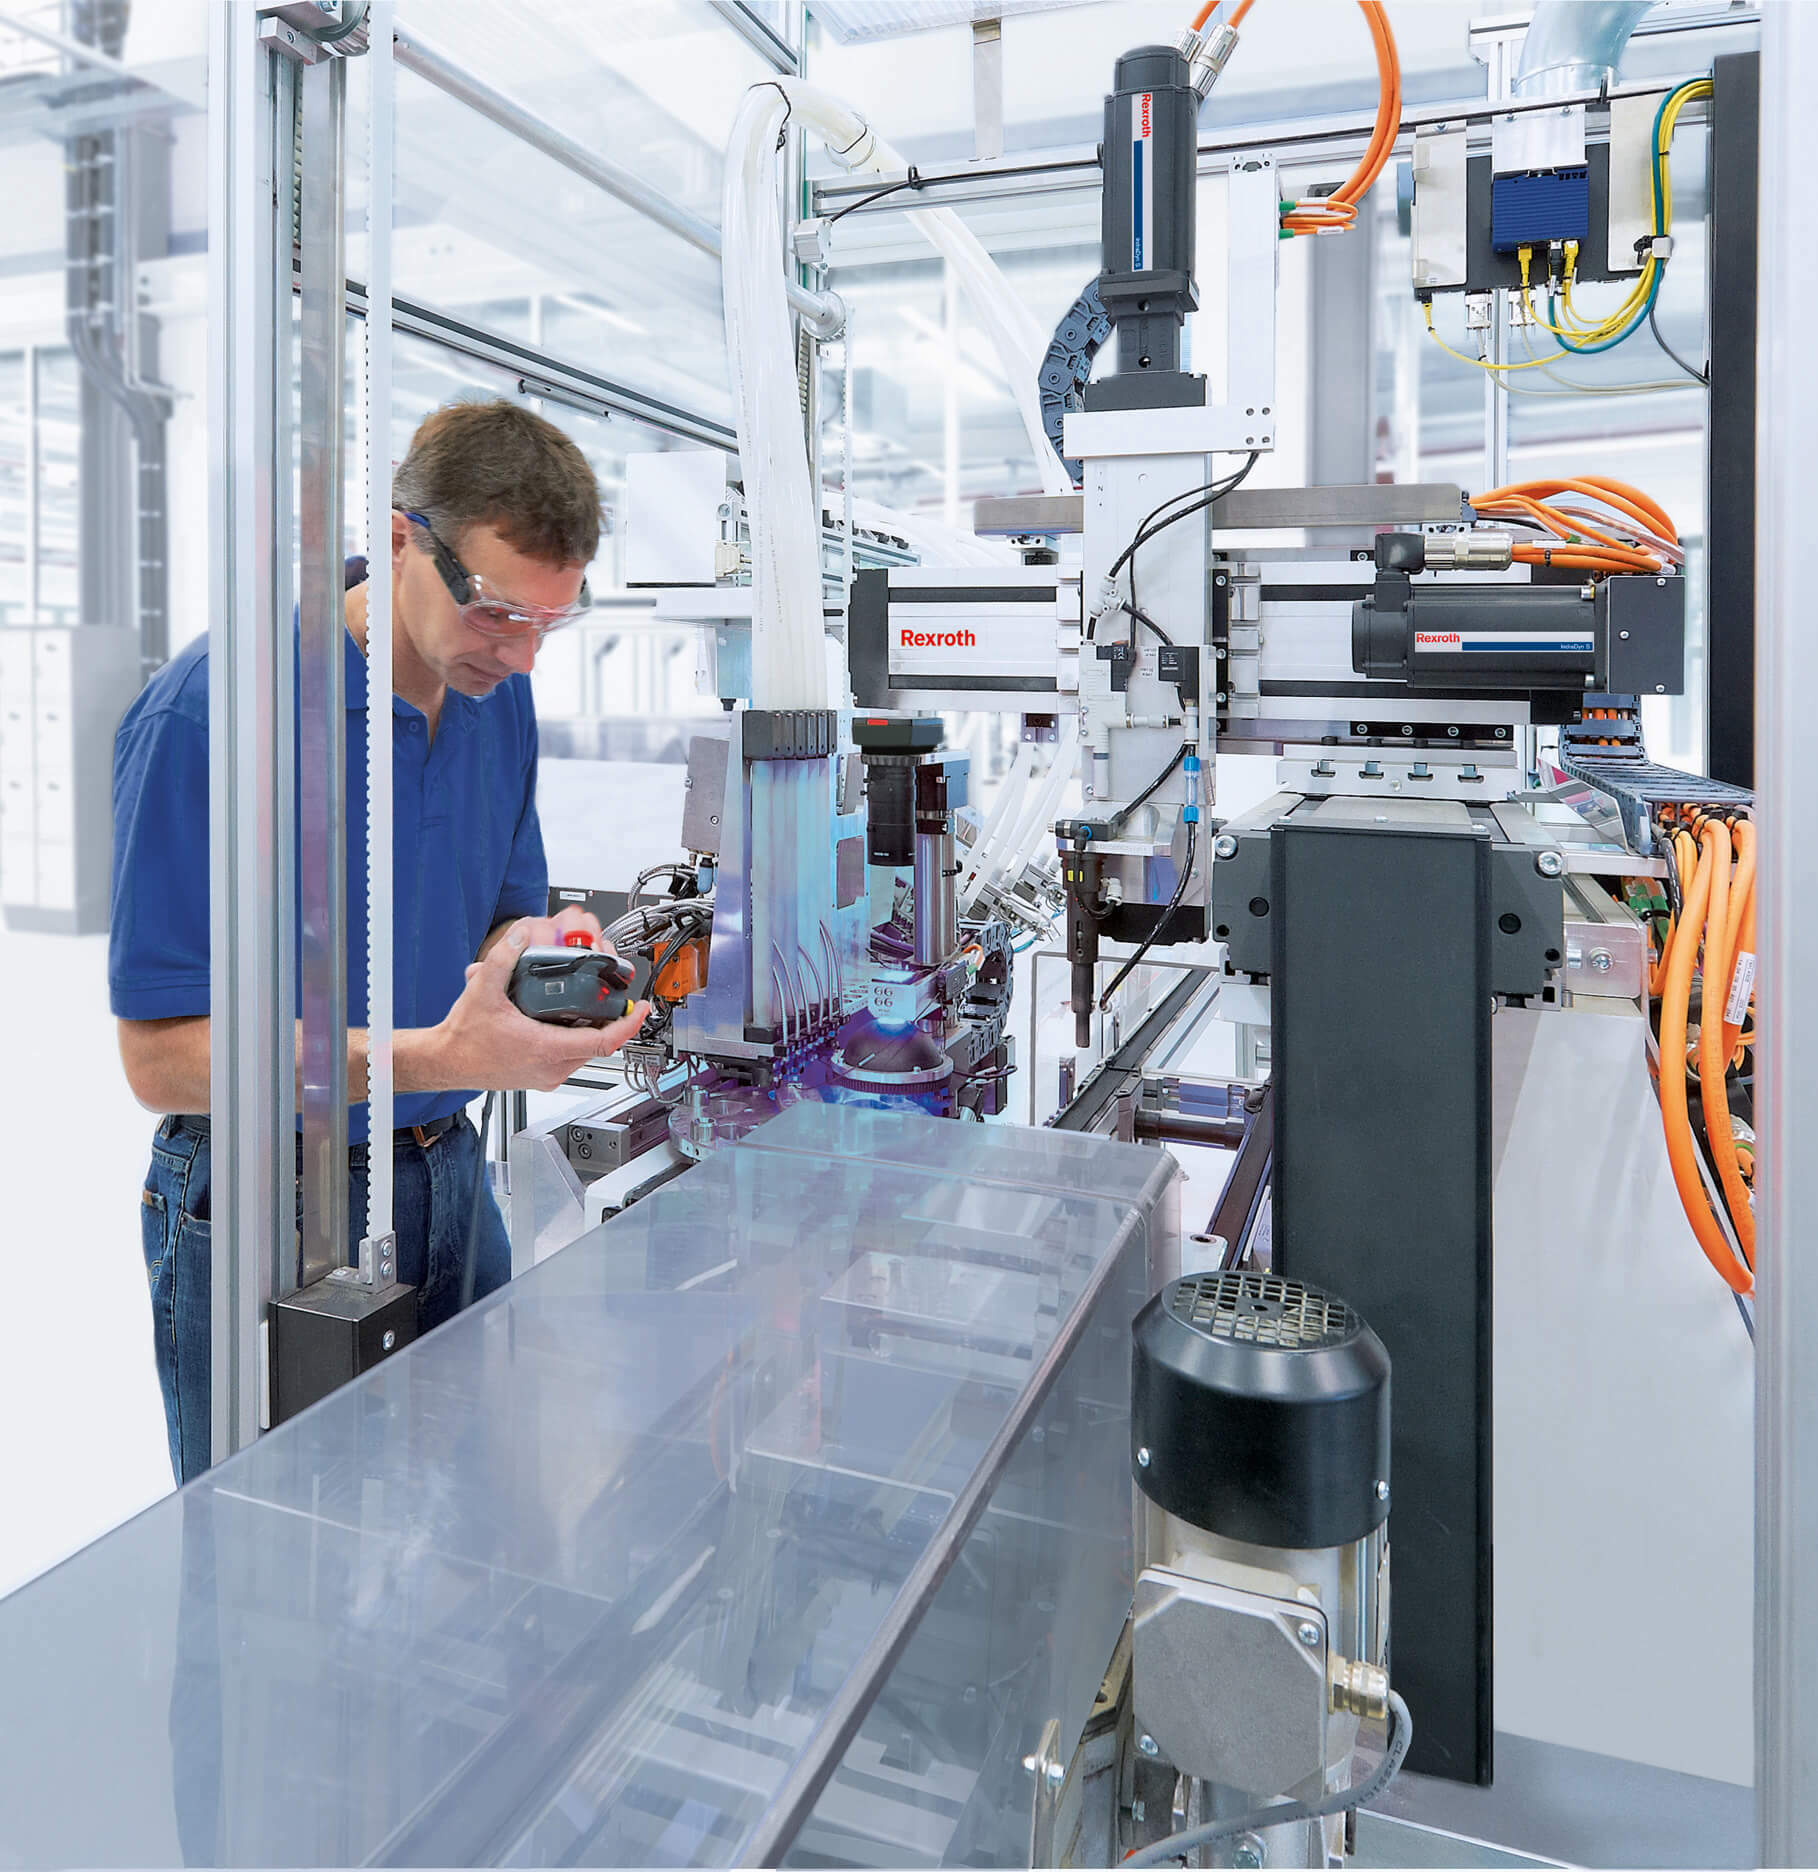 Bosch Rexroth Szervizpont - BVS Industrie-Elektronik